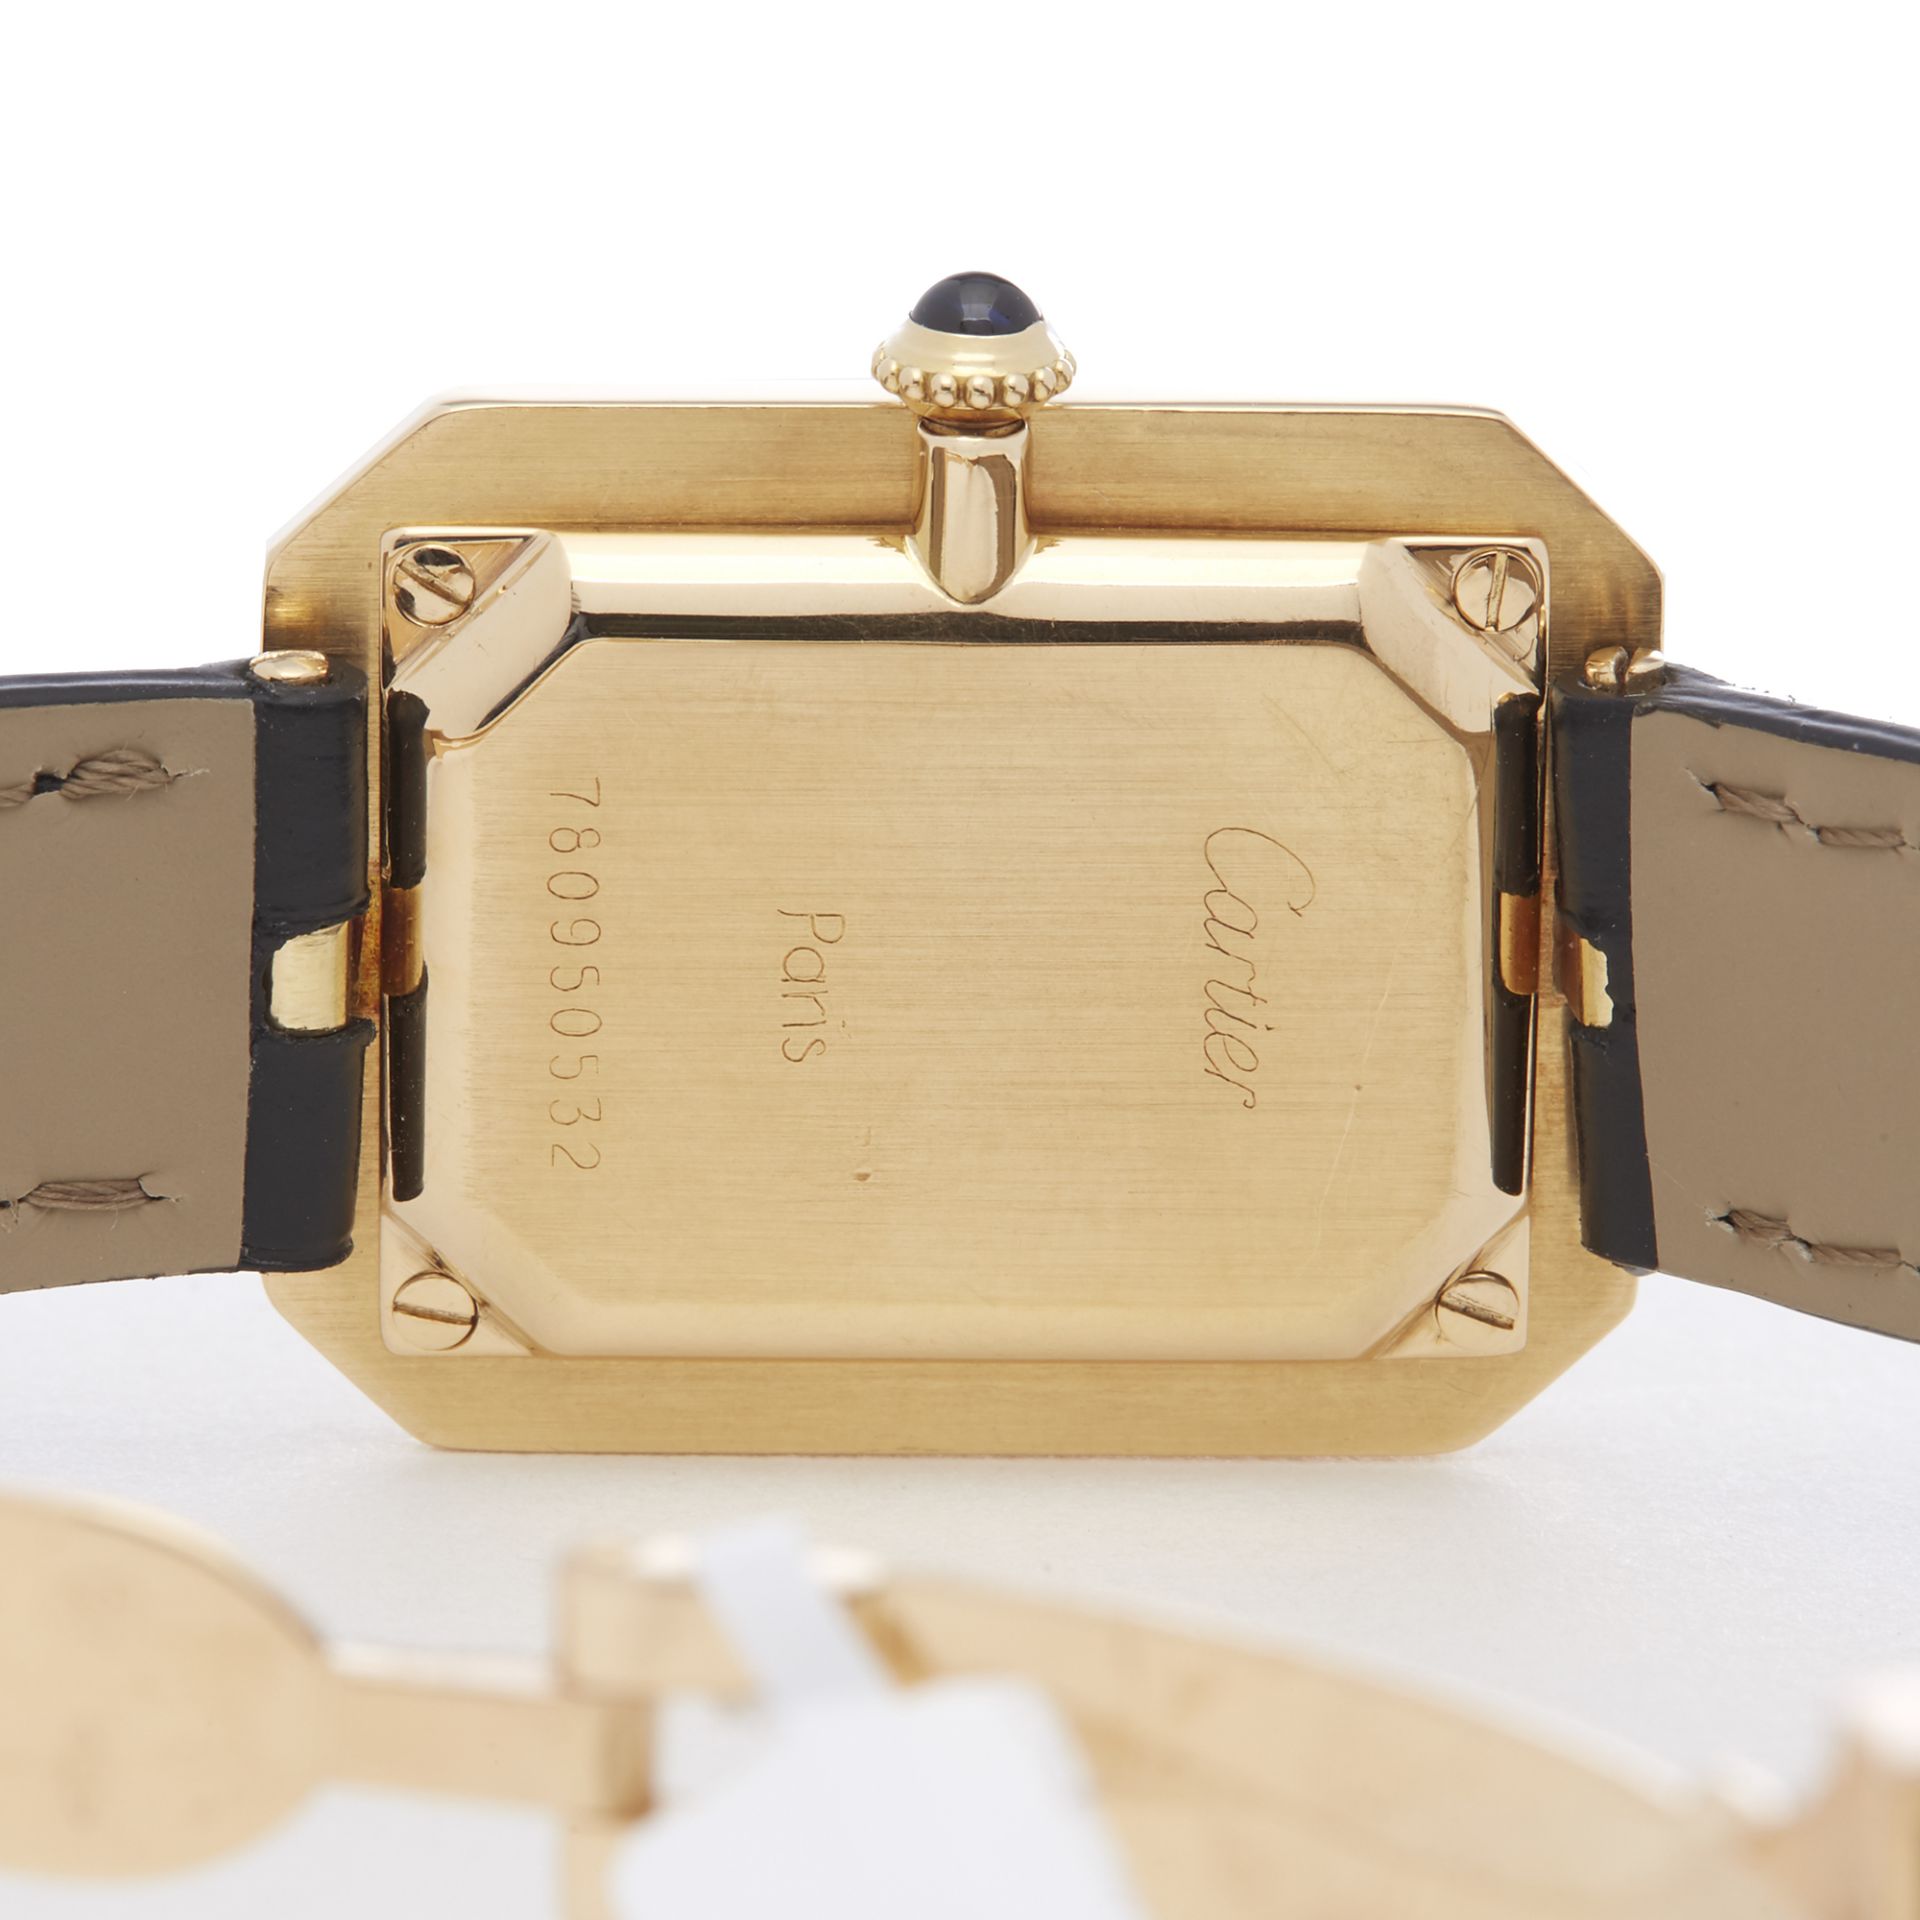 Cartier Cristallor Ladies Yellow Gold Paris Mecanique Watch - Image 4 of 8